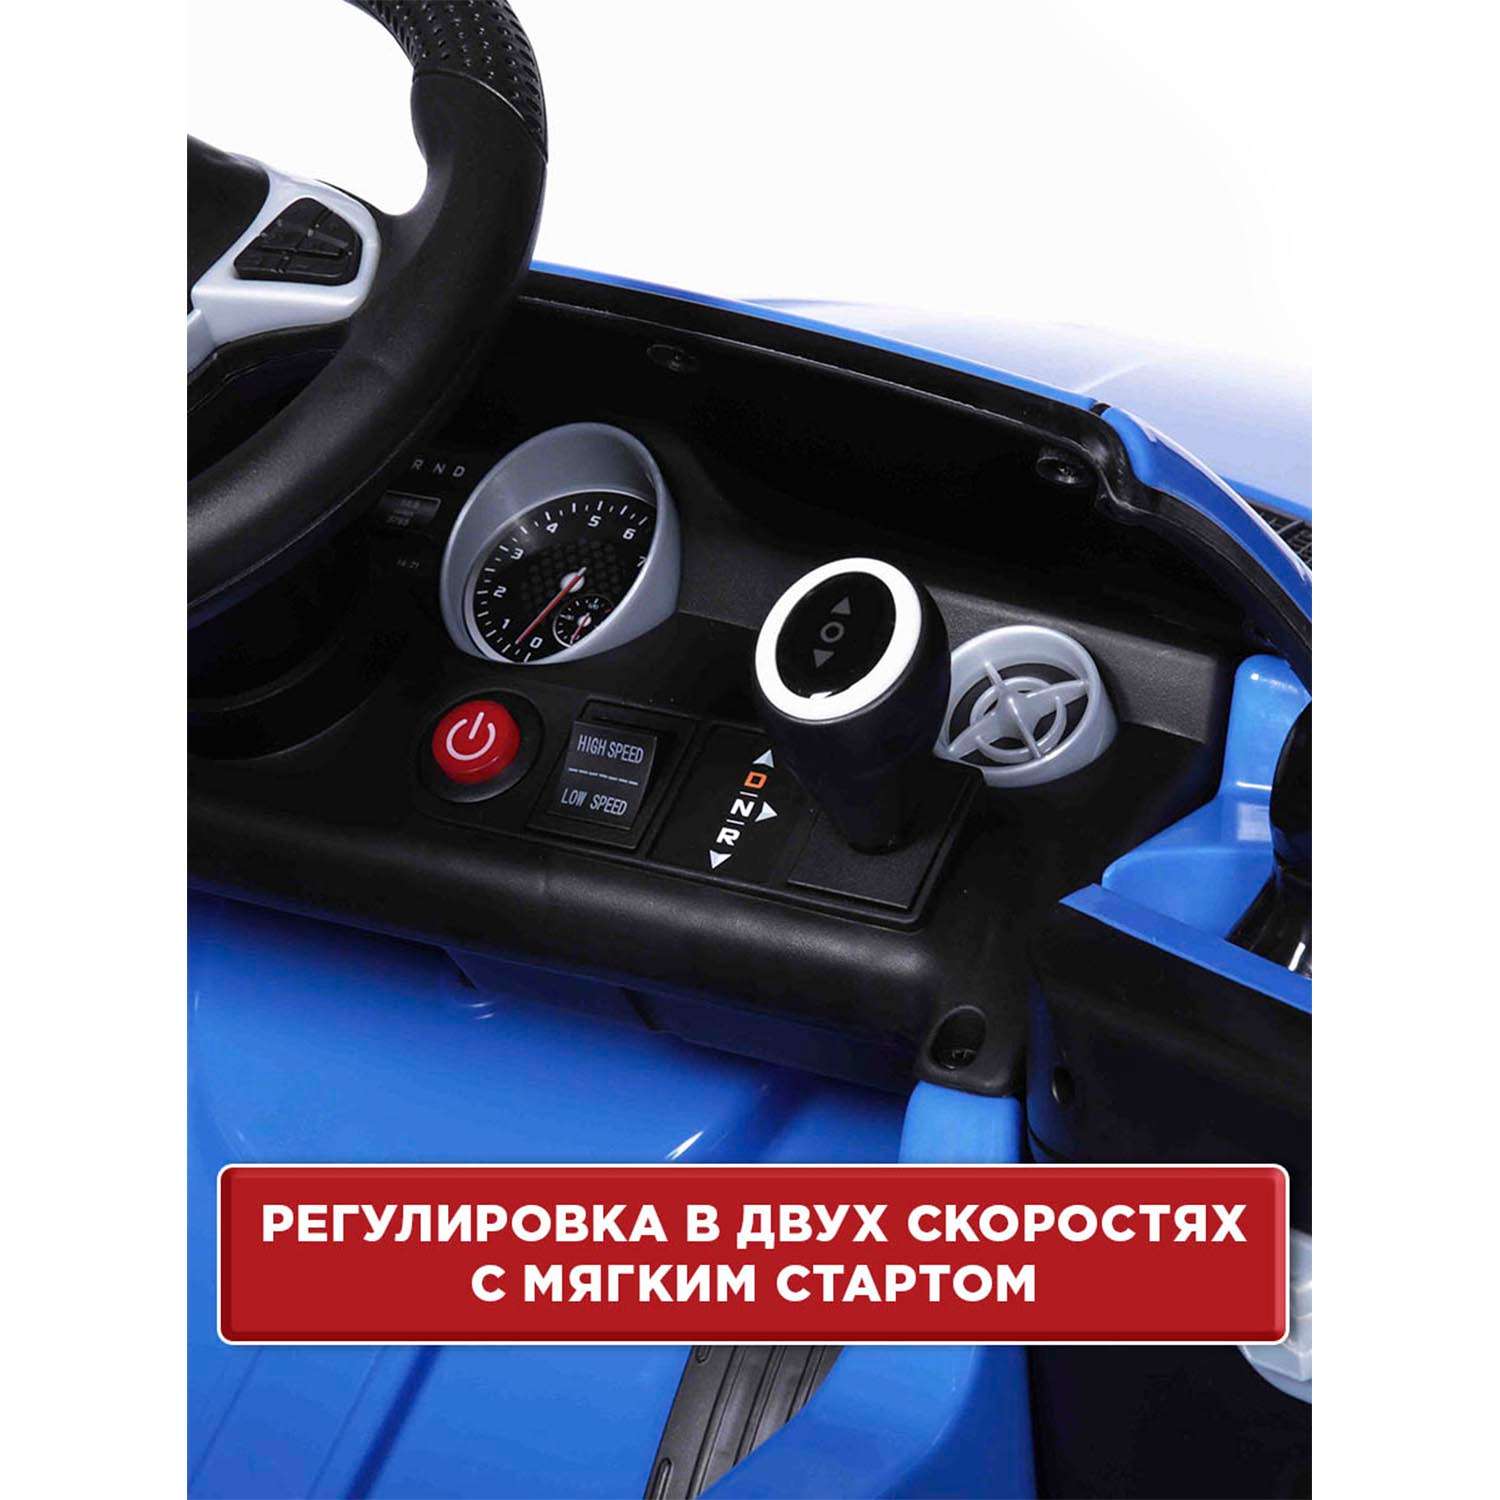 Электромобиль BabyCare Mercedes резиновые колеса синий - фото 10